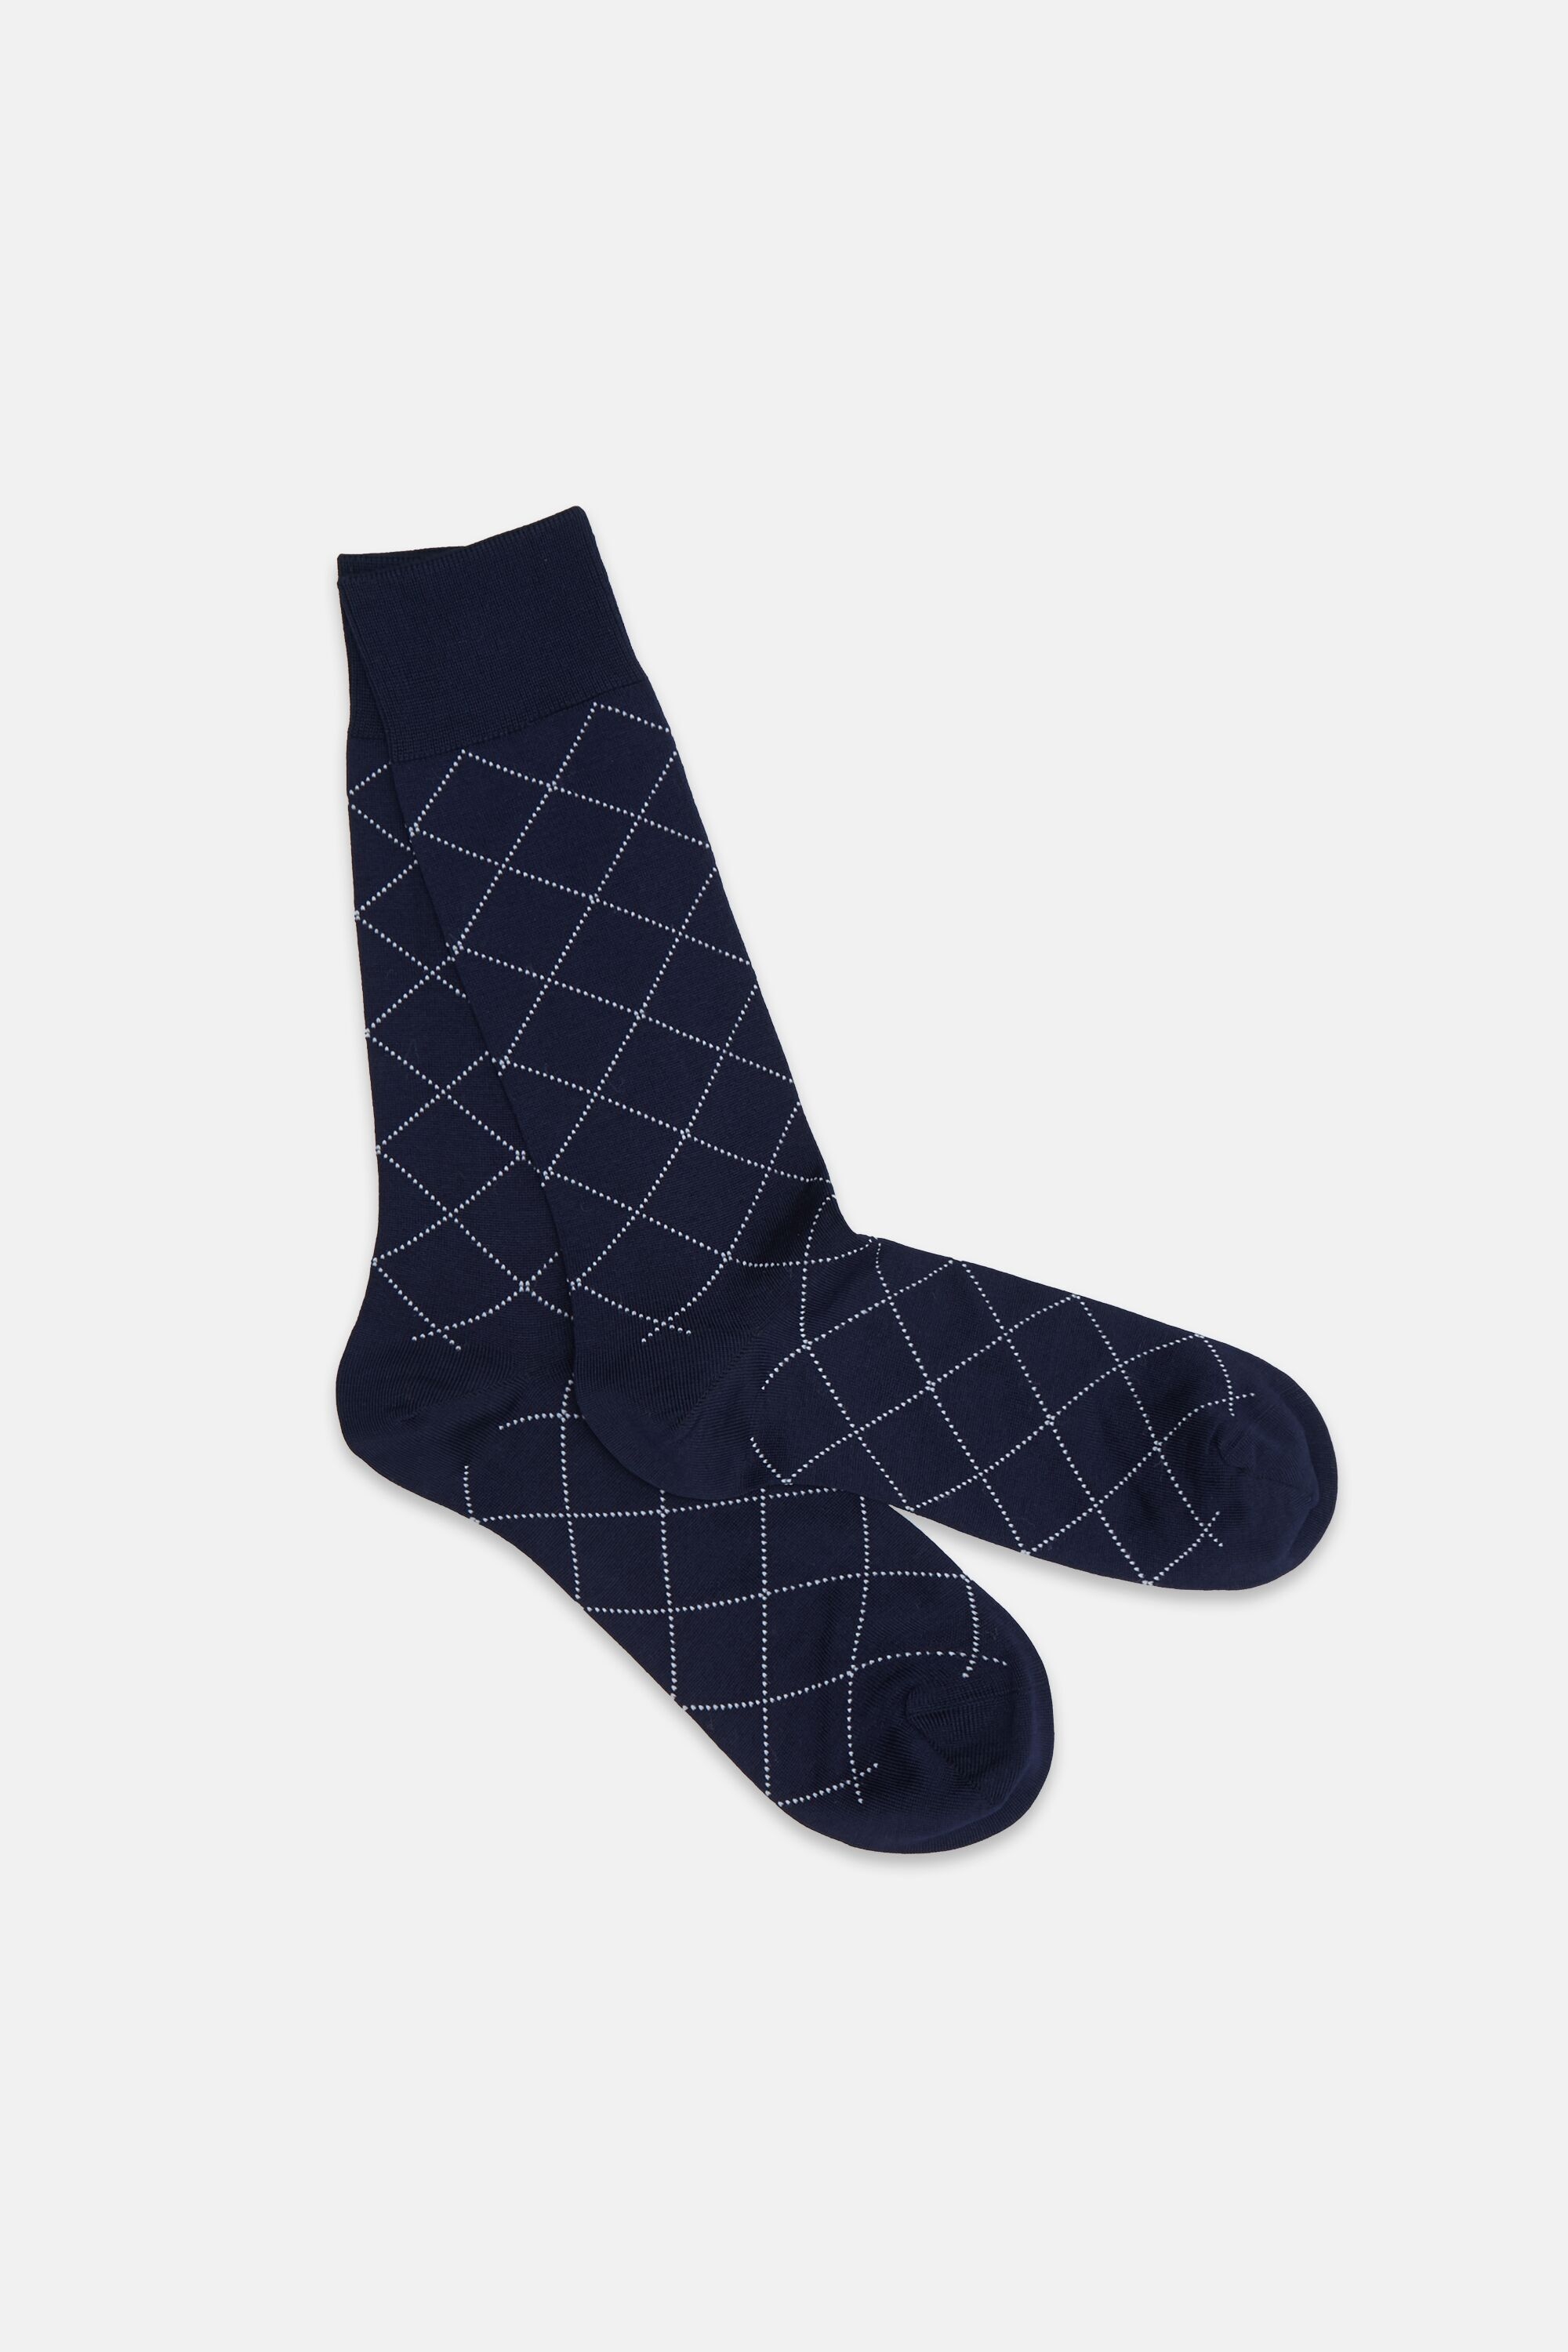 Diamond knit socks